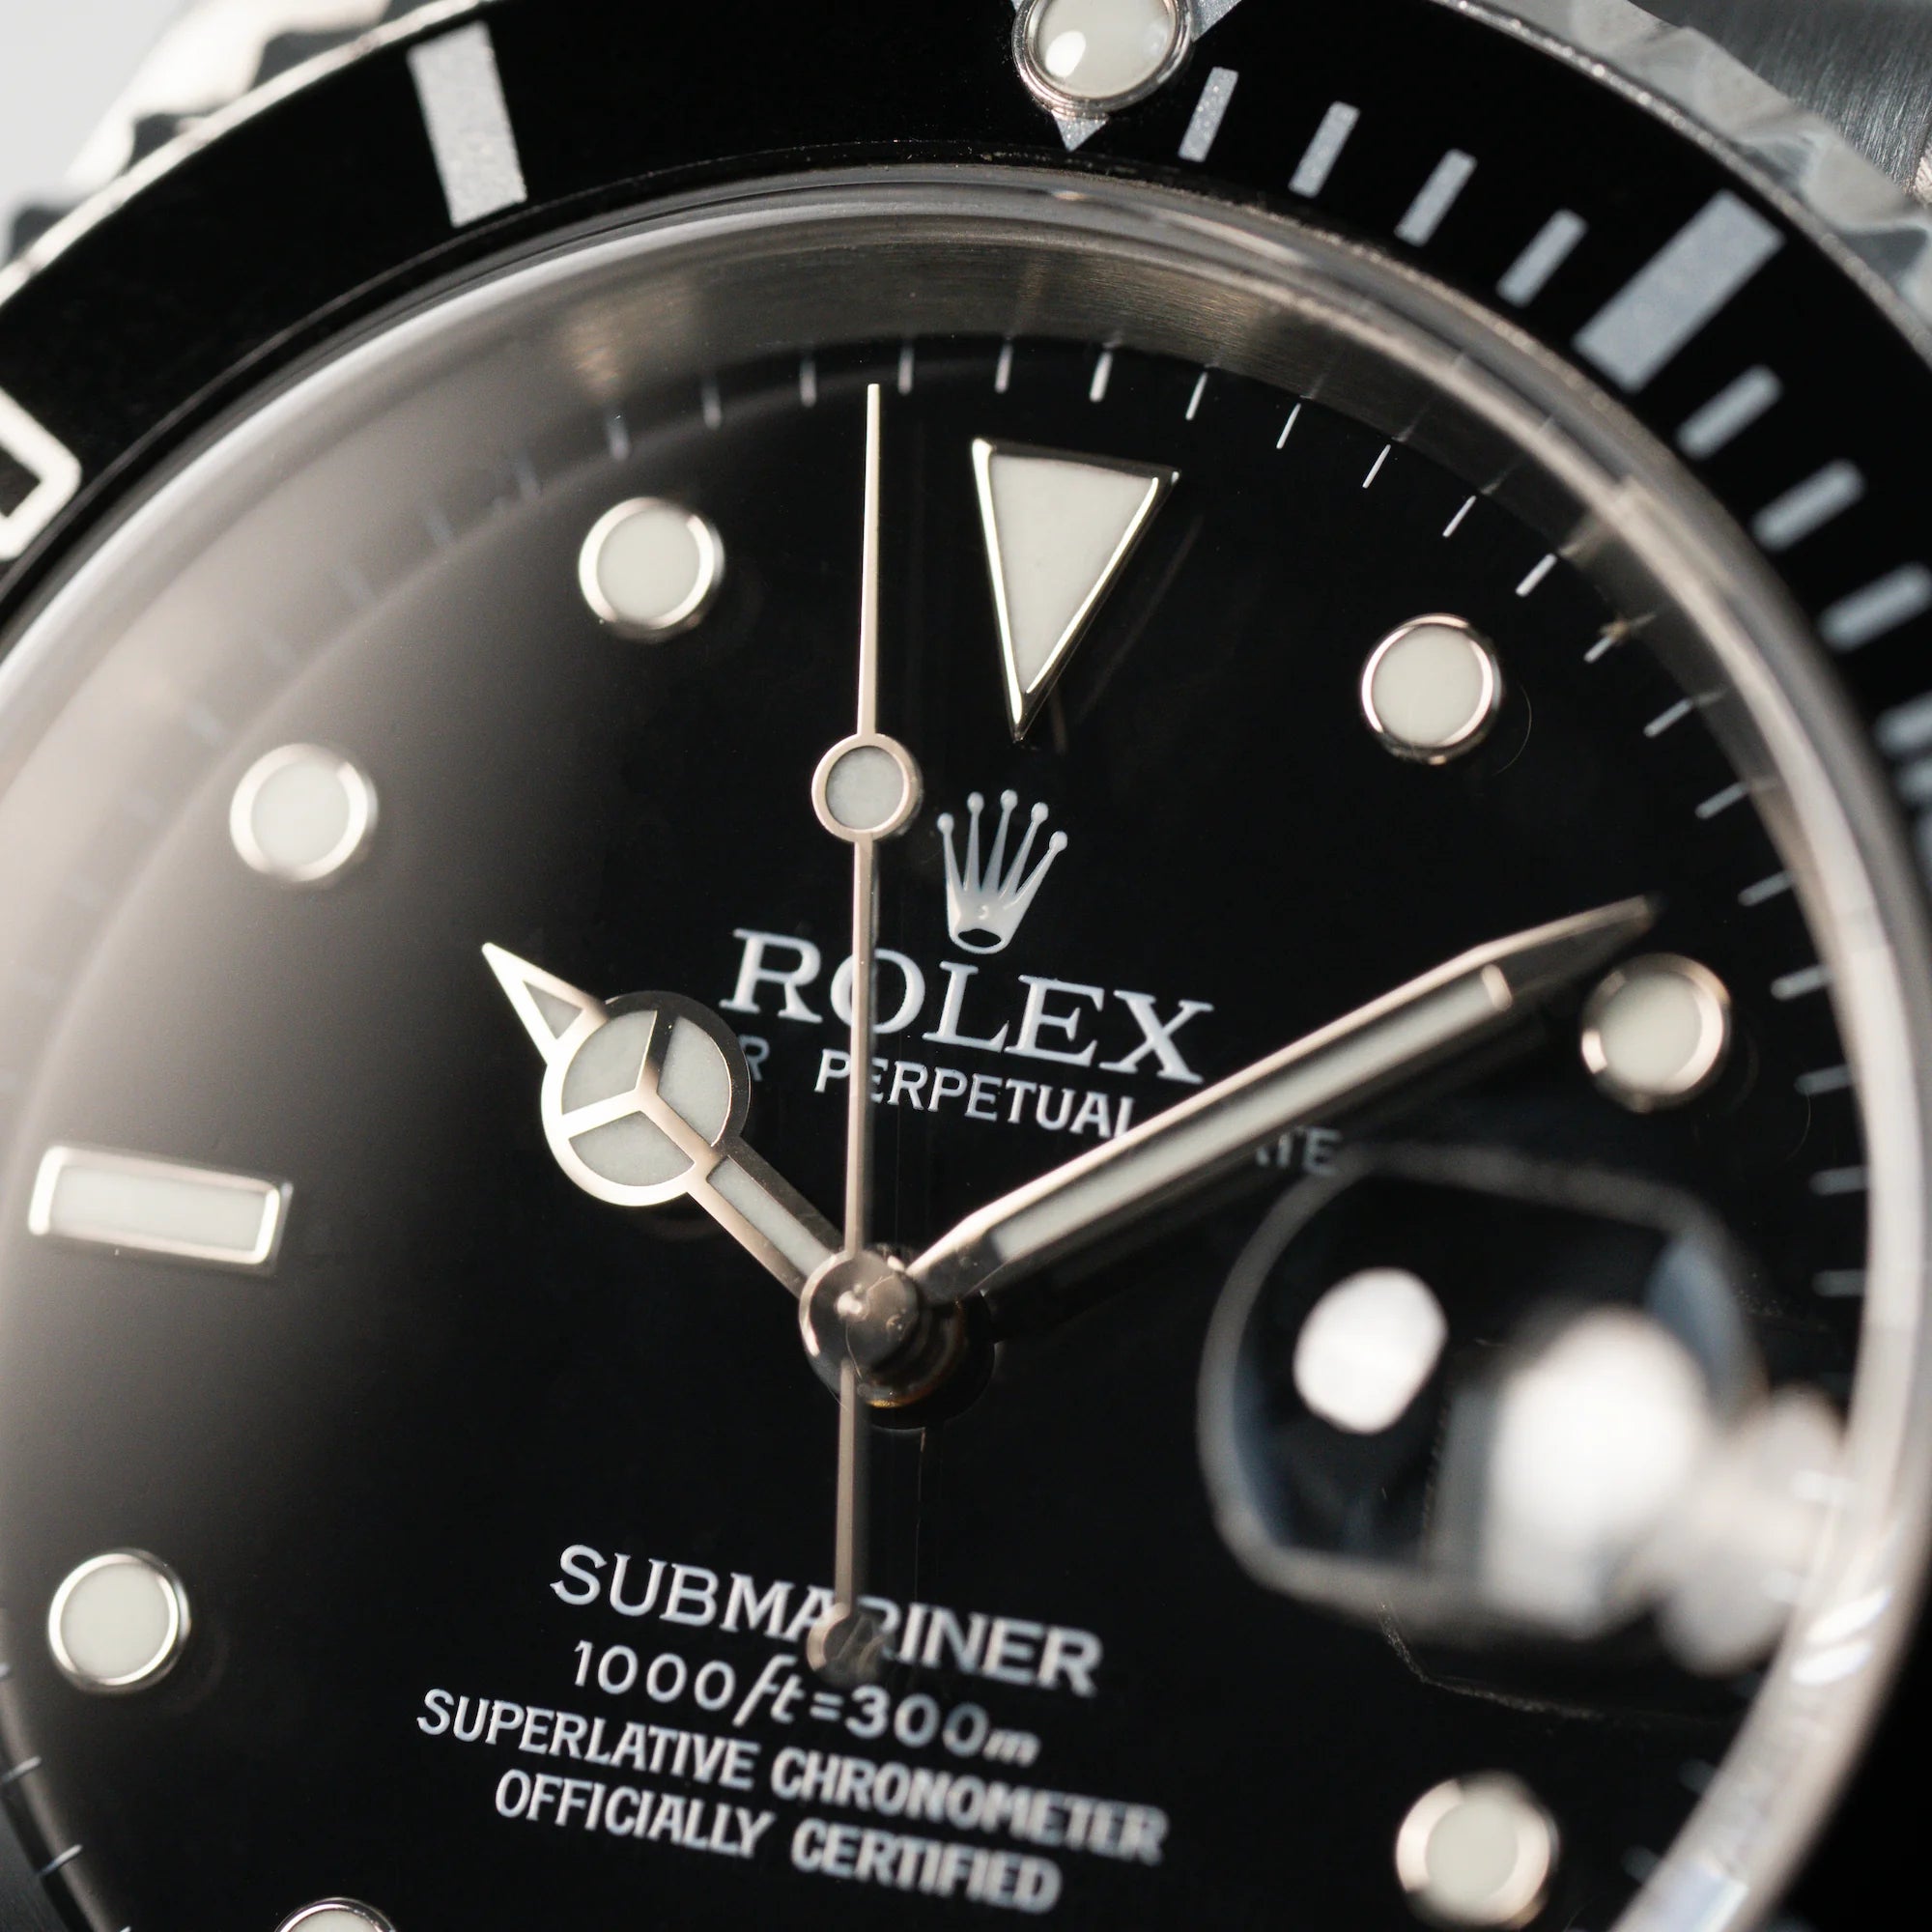 Detailaufnahme des Zifferblatts der Rolex Submariner Date in Schwarz mit der Referenz 16610T